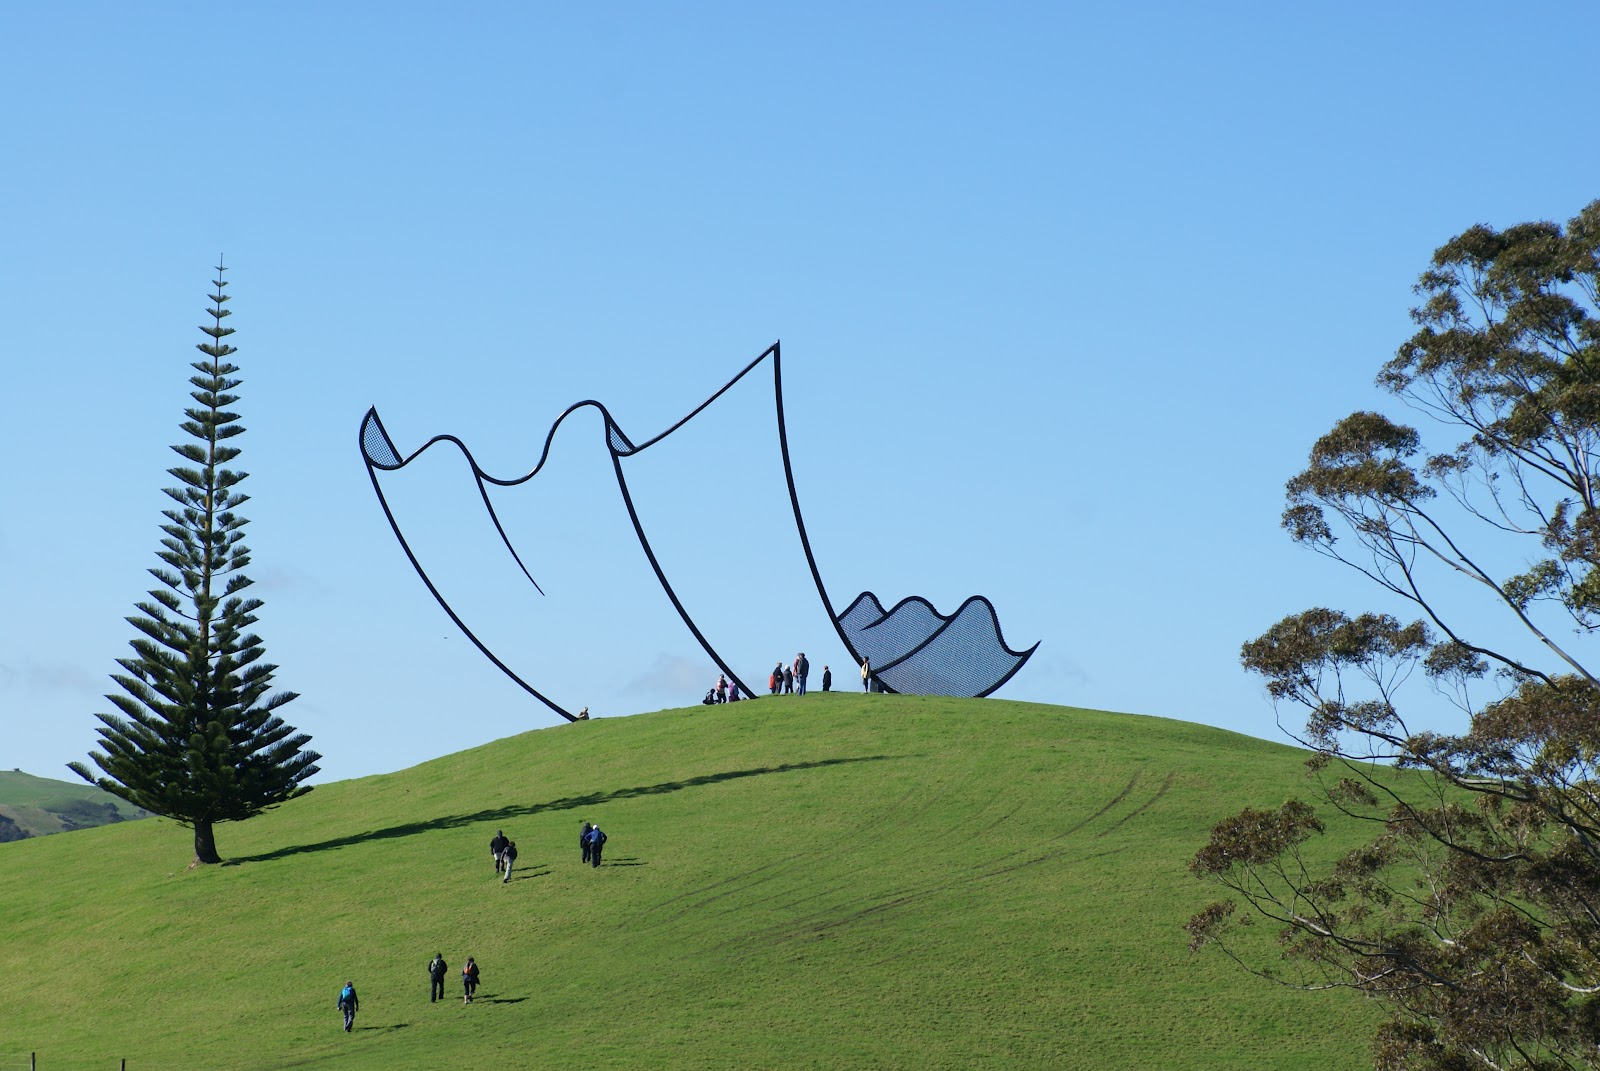 New Zealand cartoon kleenex sculpture by Neil Dawson.